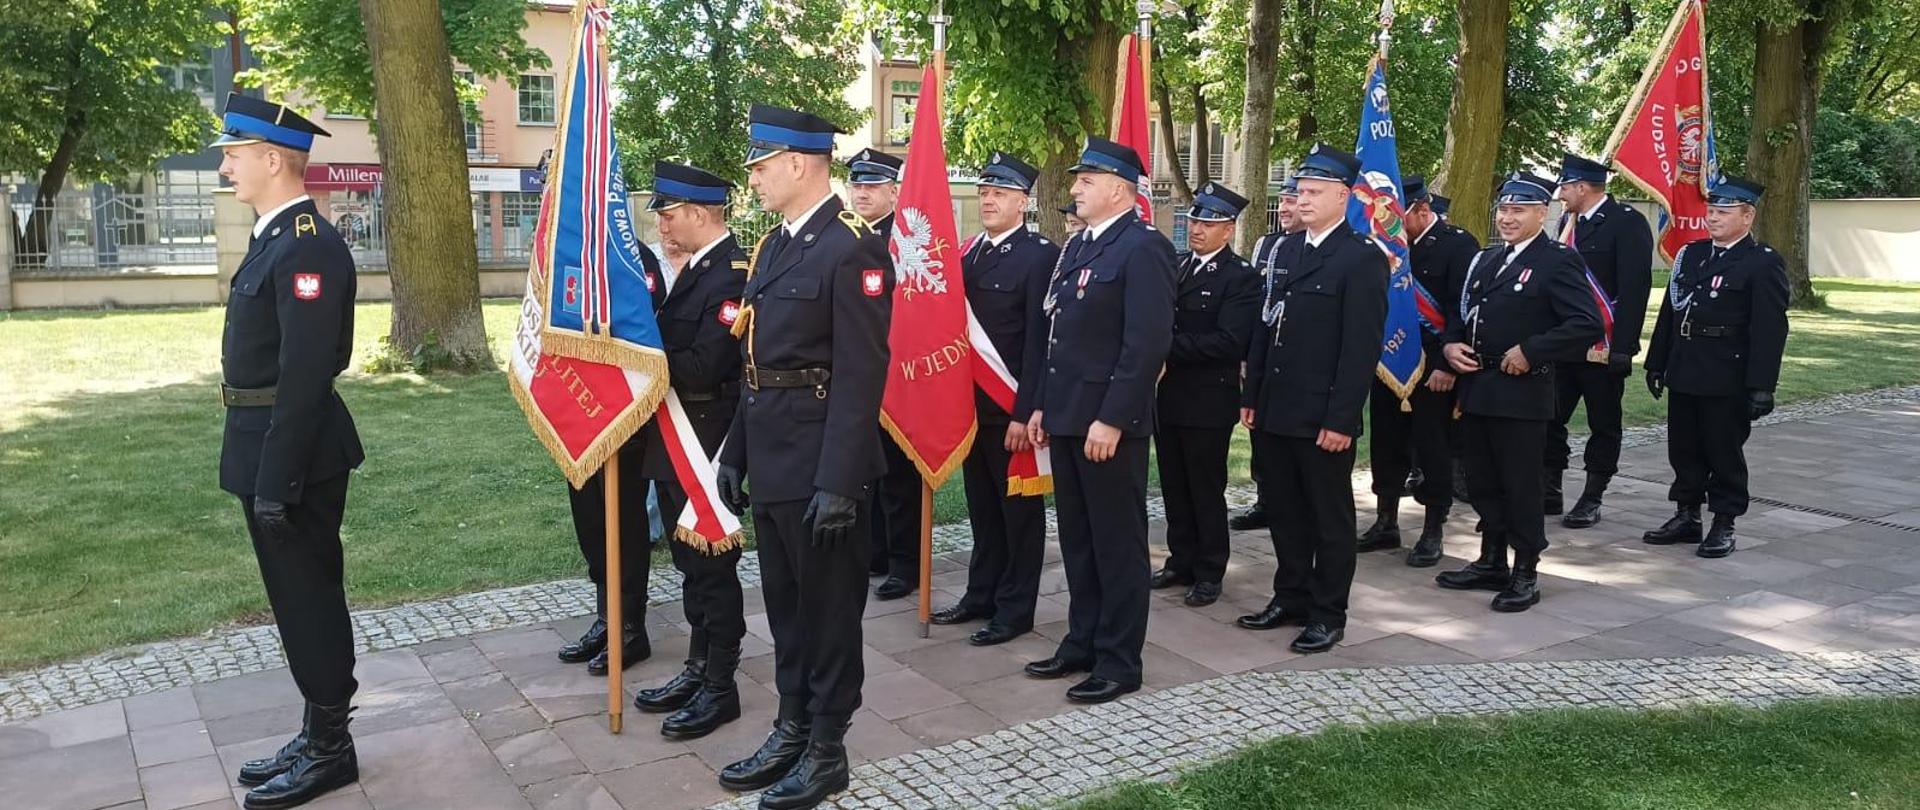 Strażacy stojący bokiem w mundurach galowych ze sztandarami, Z przodu dowódca uroczystości. W tle drzewa i budynki 